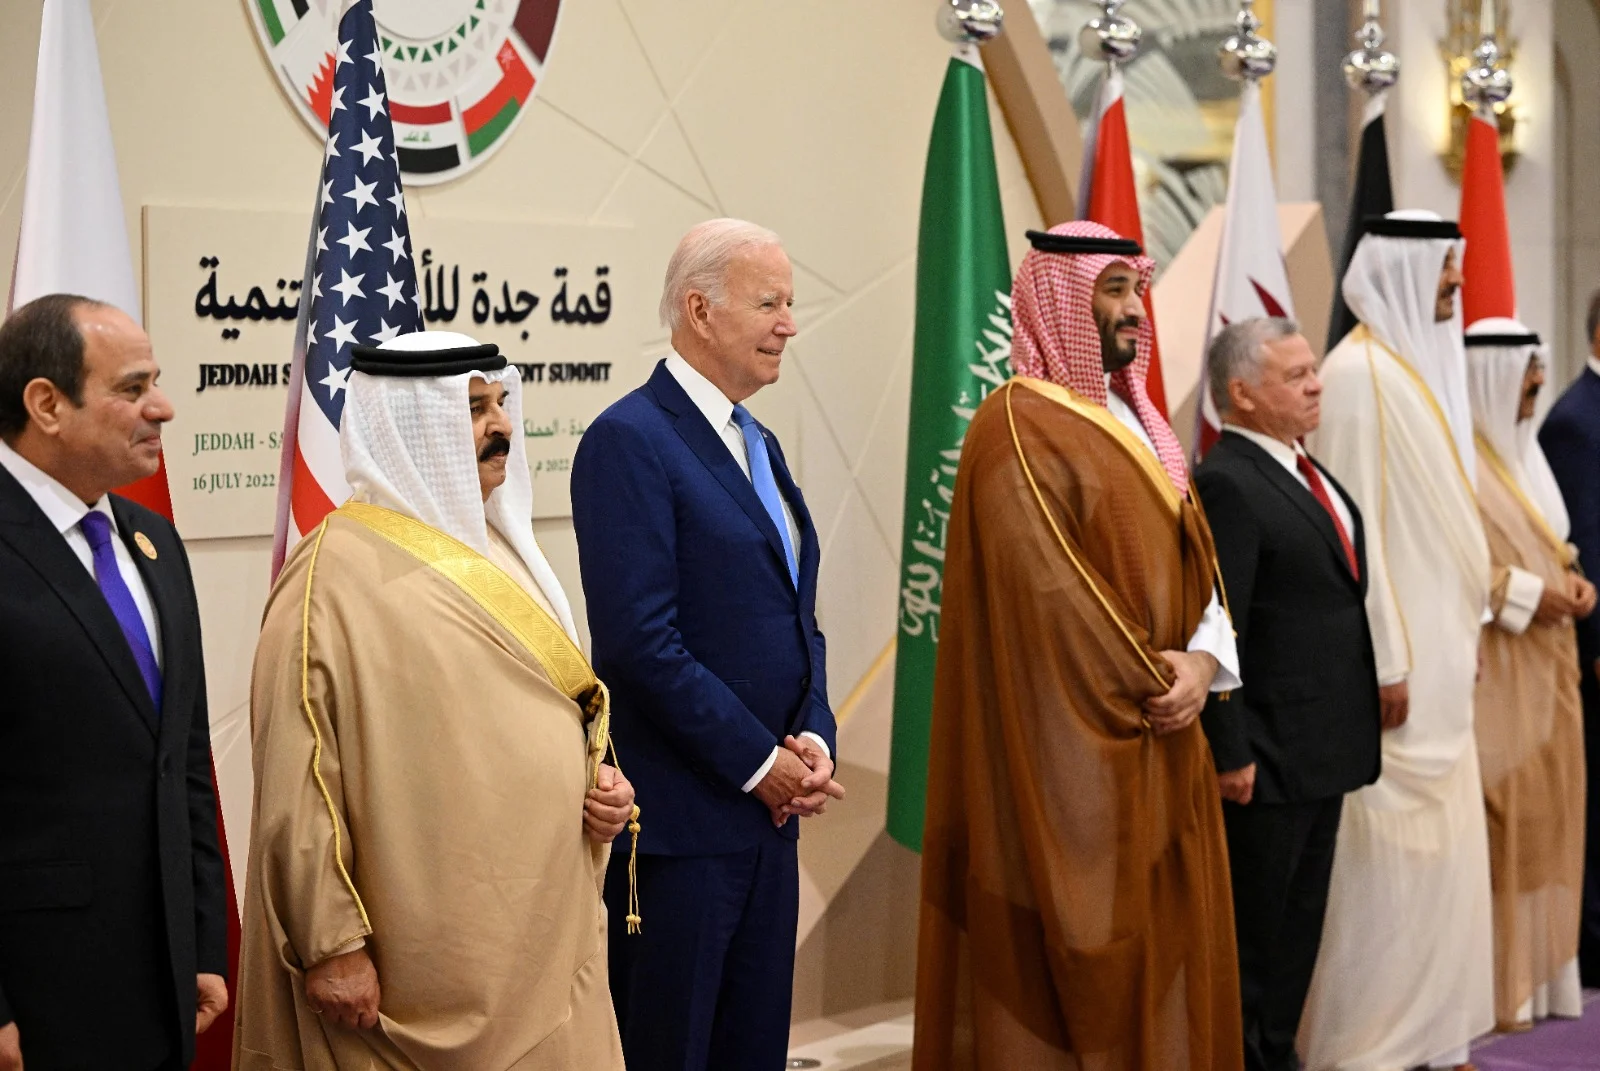 ביידן בפסגה עם מנהיגים ערבים בסעודיה